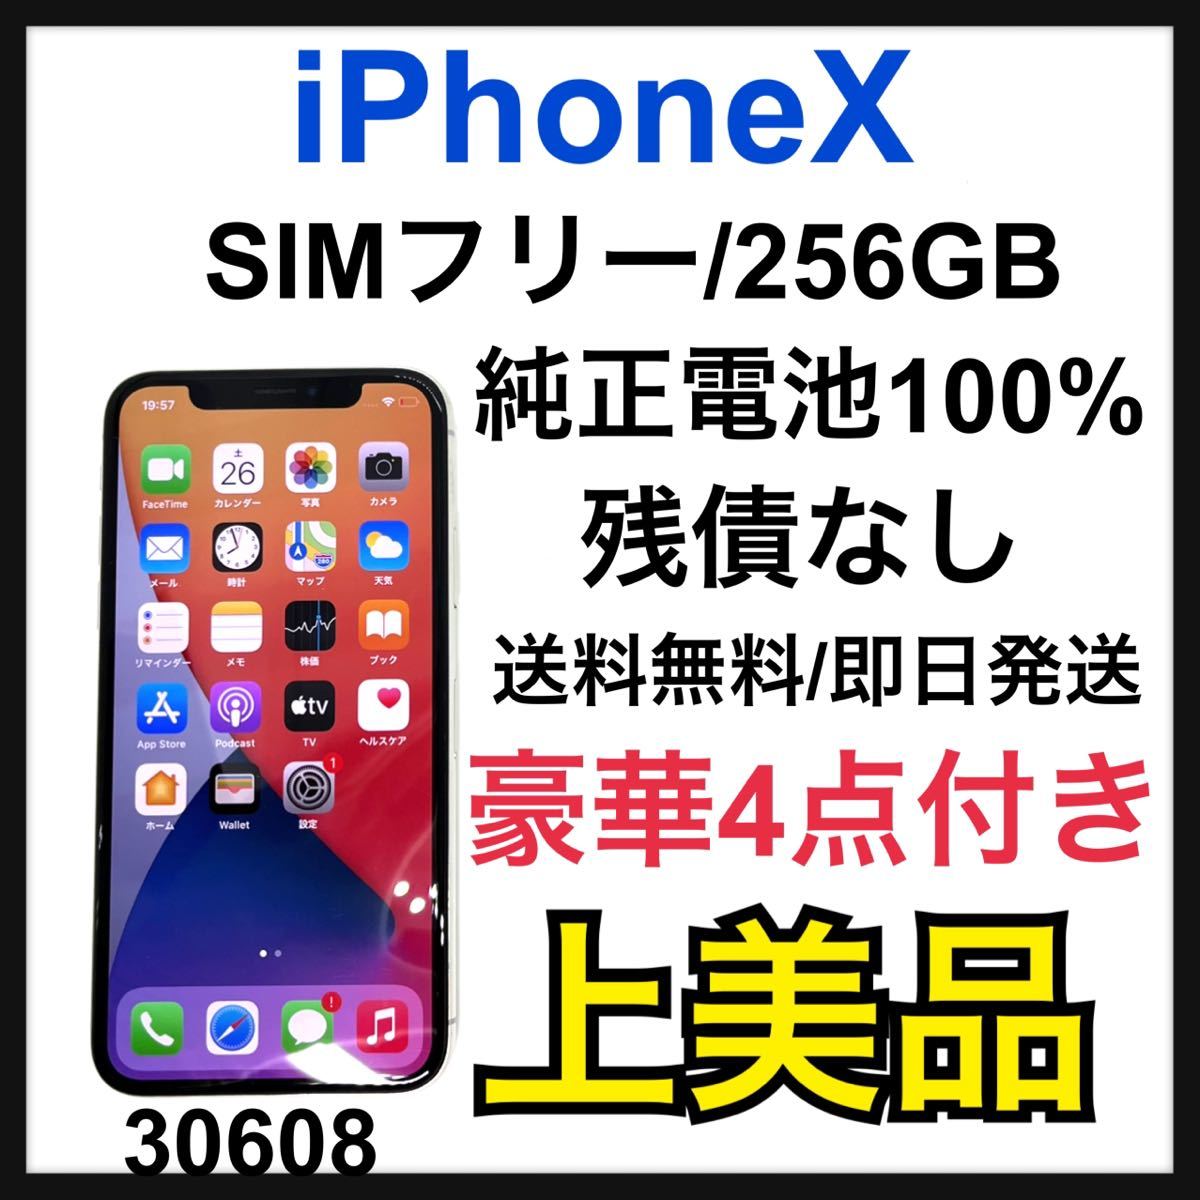 A 100% iPhone X Space Gray 256 GB SIMフリー 携帯電話 